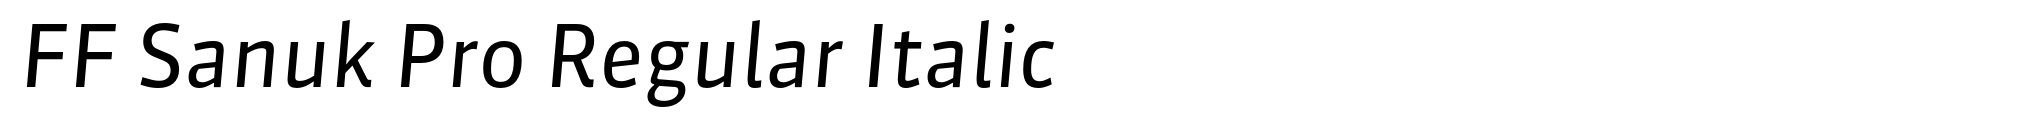 FF Sanuk Pro Regular Italic image